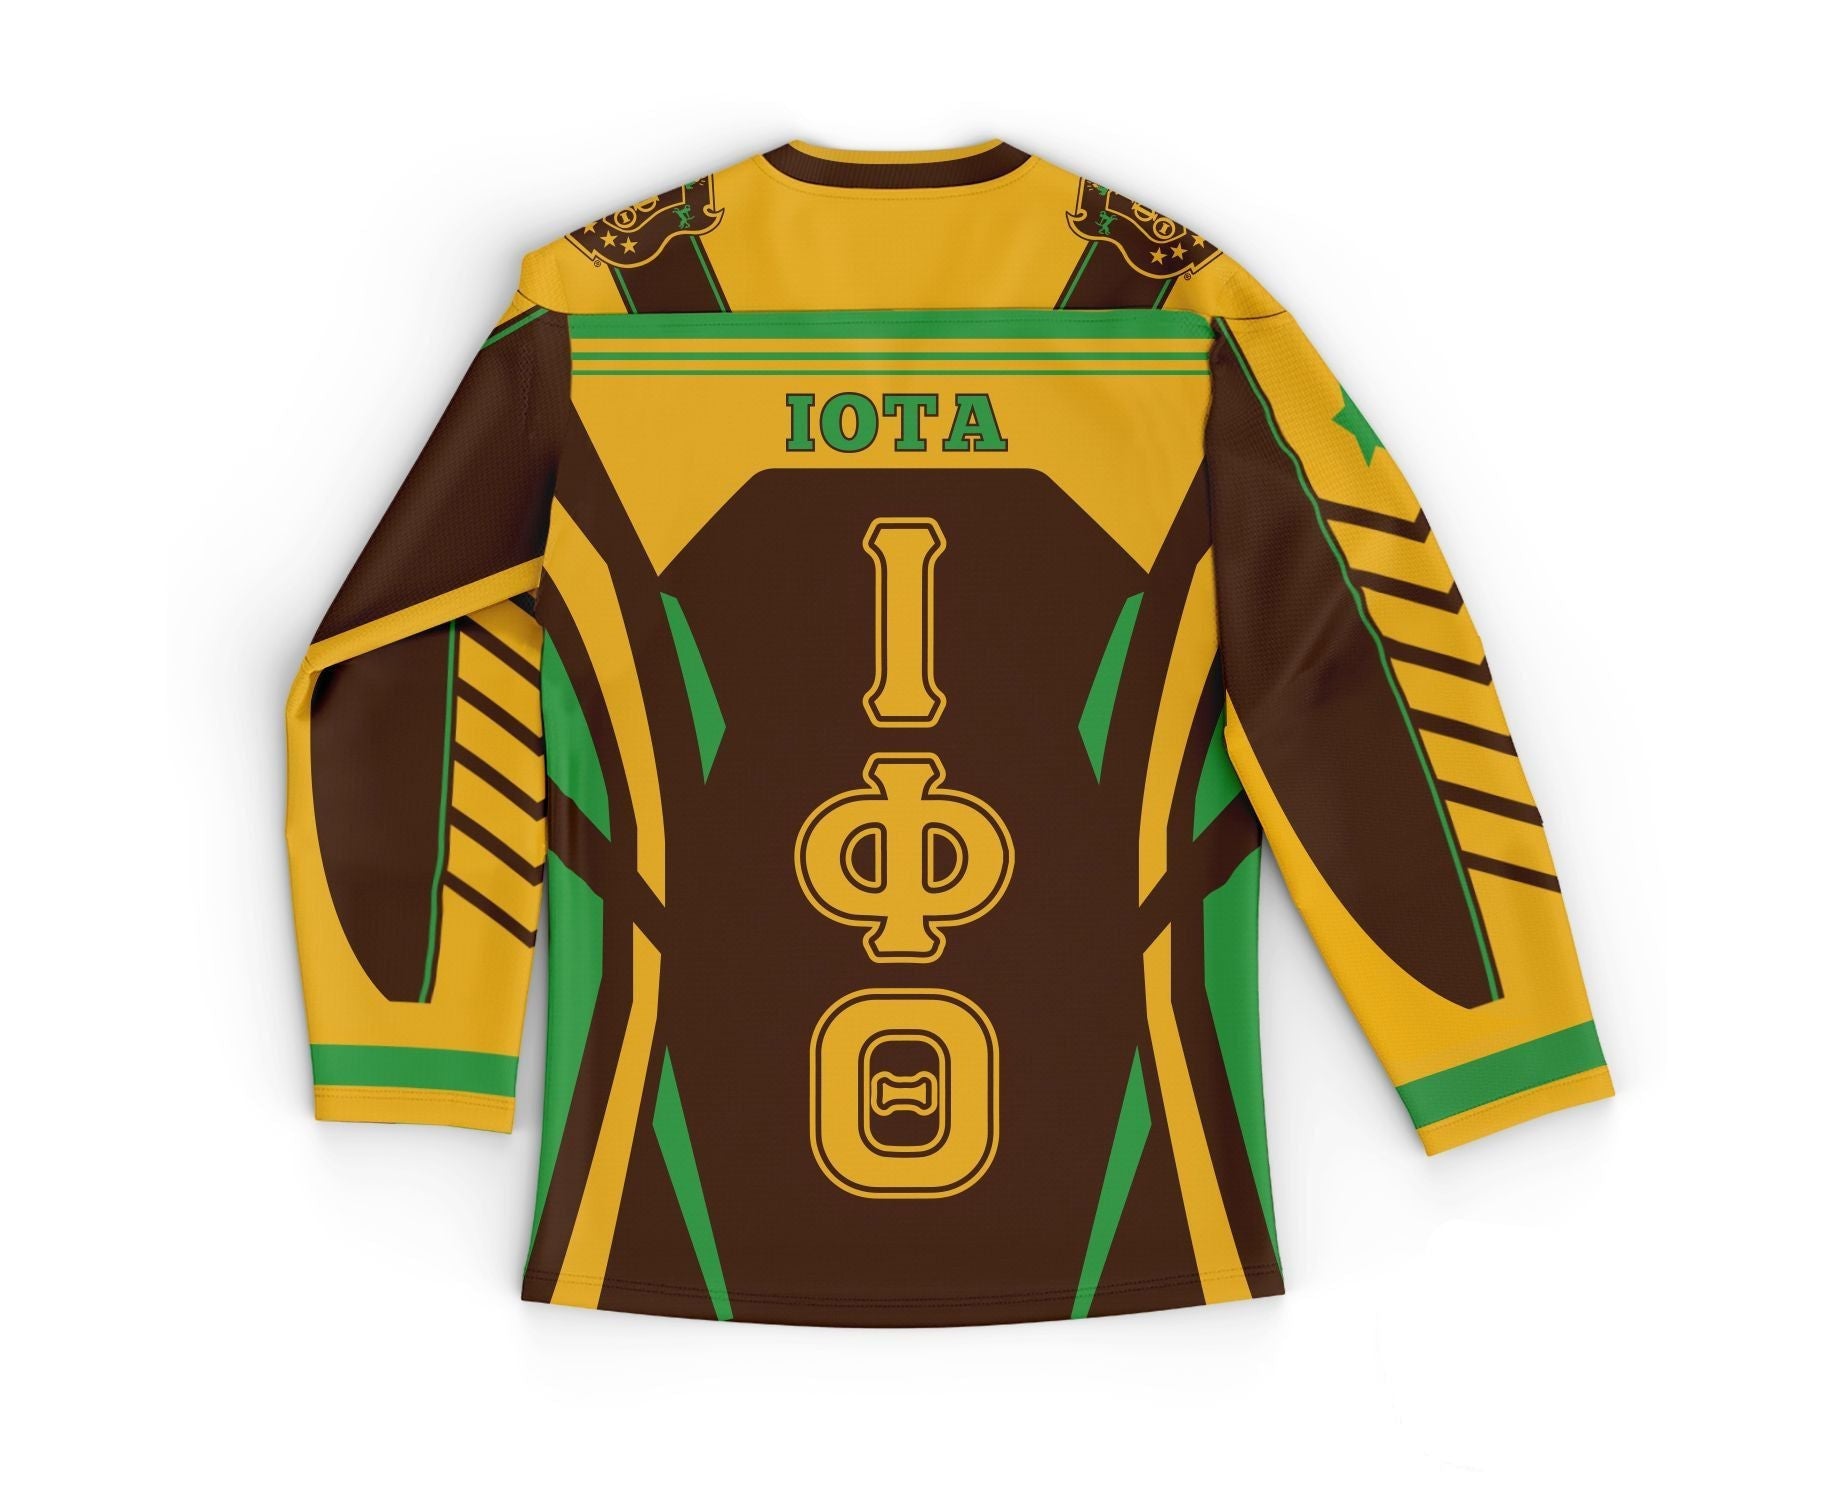 Fraternity Hockey Jersey - Iota Phi Theta Armor Hockey Jersey